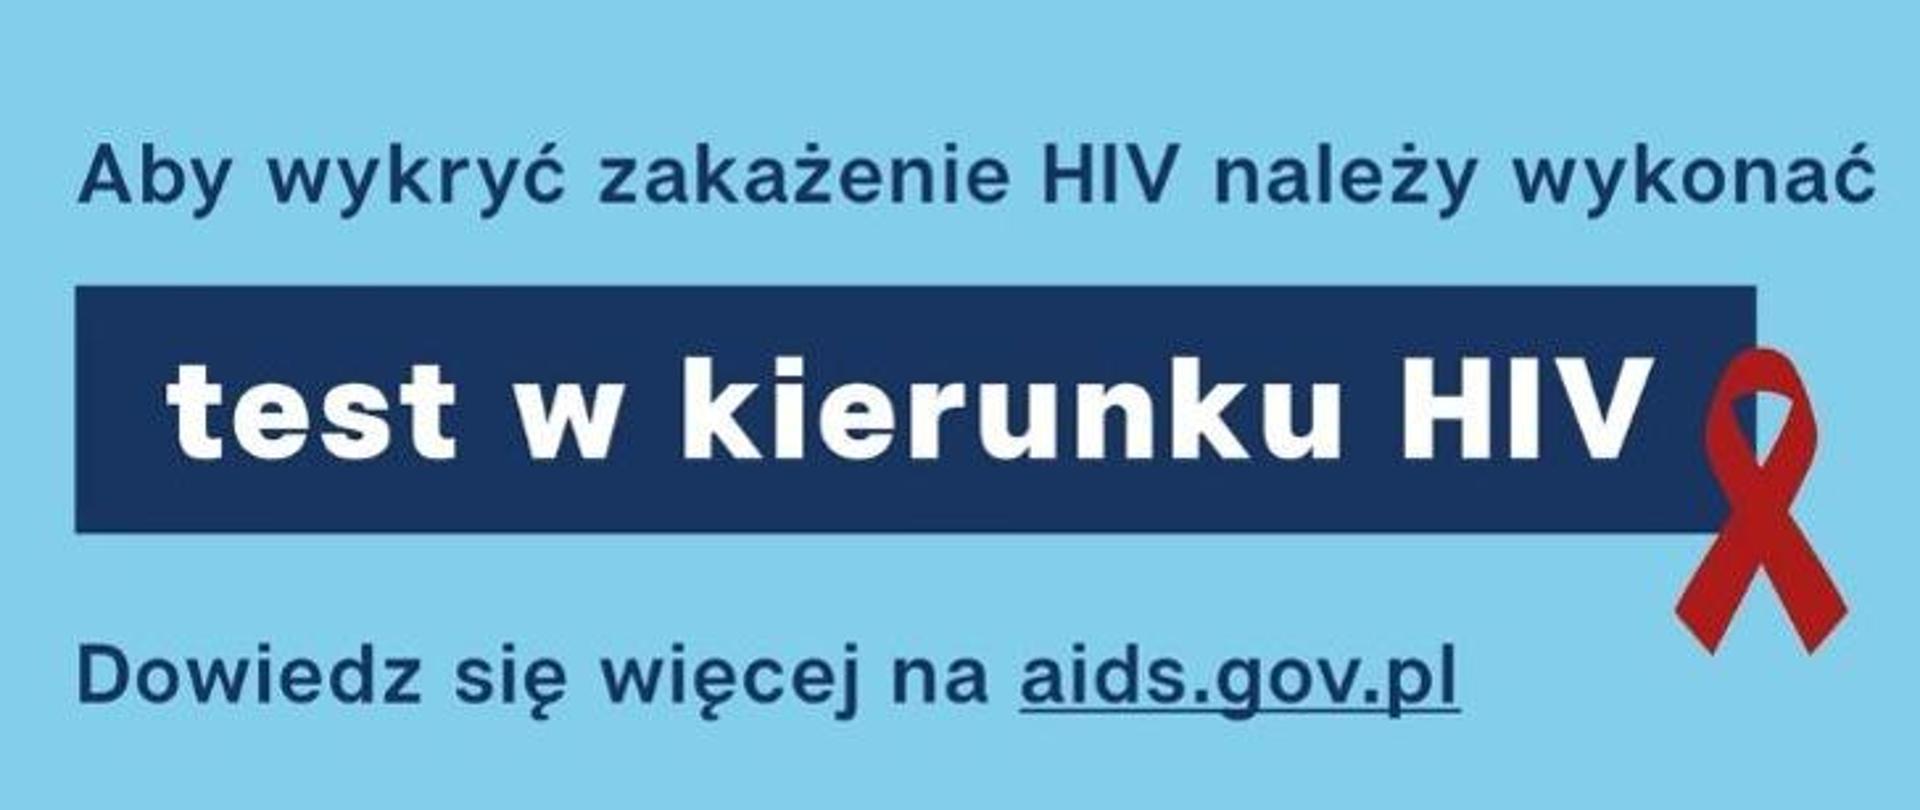 Błękitny prostokąt z czerwoną wstążką i napisem "Aby wykryć zakażenie HIV należy wykonać test w kierunku HIV. Dowiedz się więcej na aids.gov.pl.".